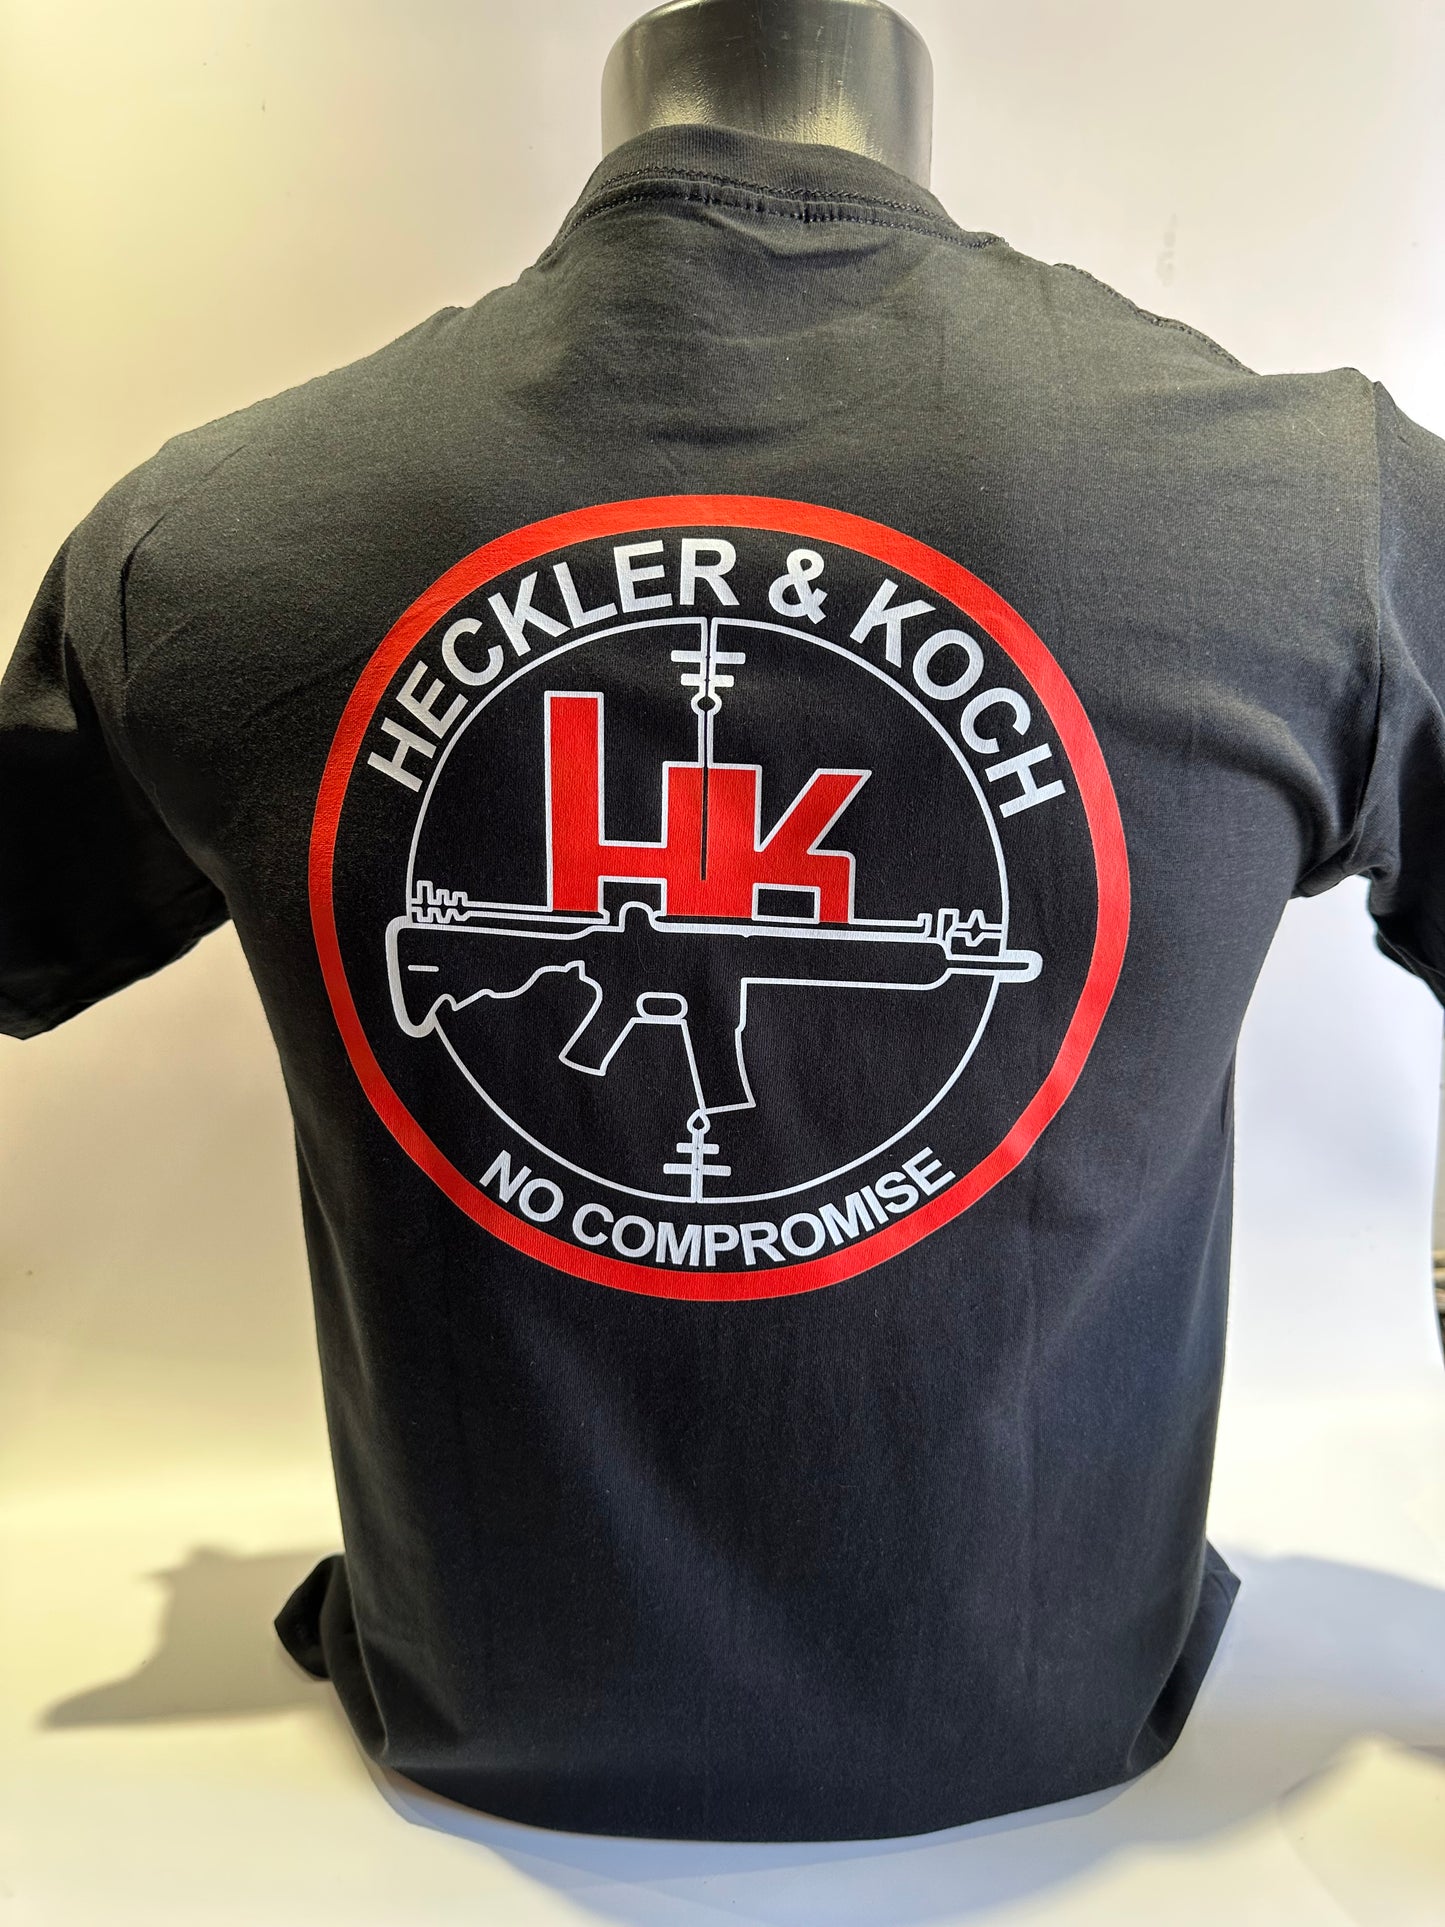 Heckler & Koch T shirt – HIG OPERATOR